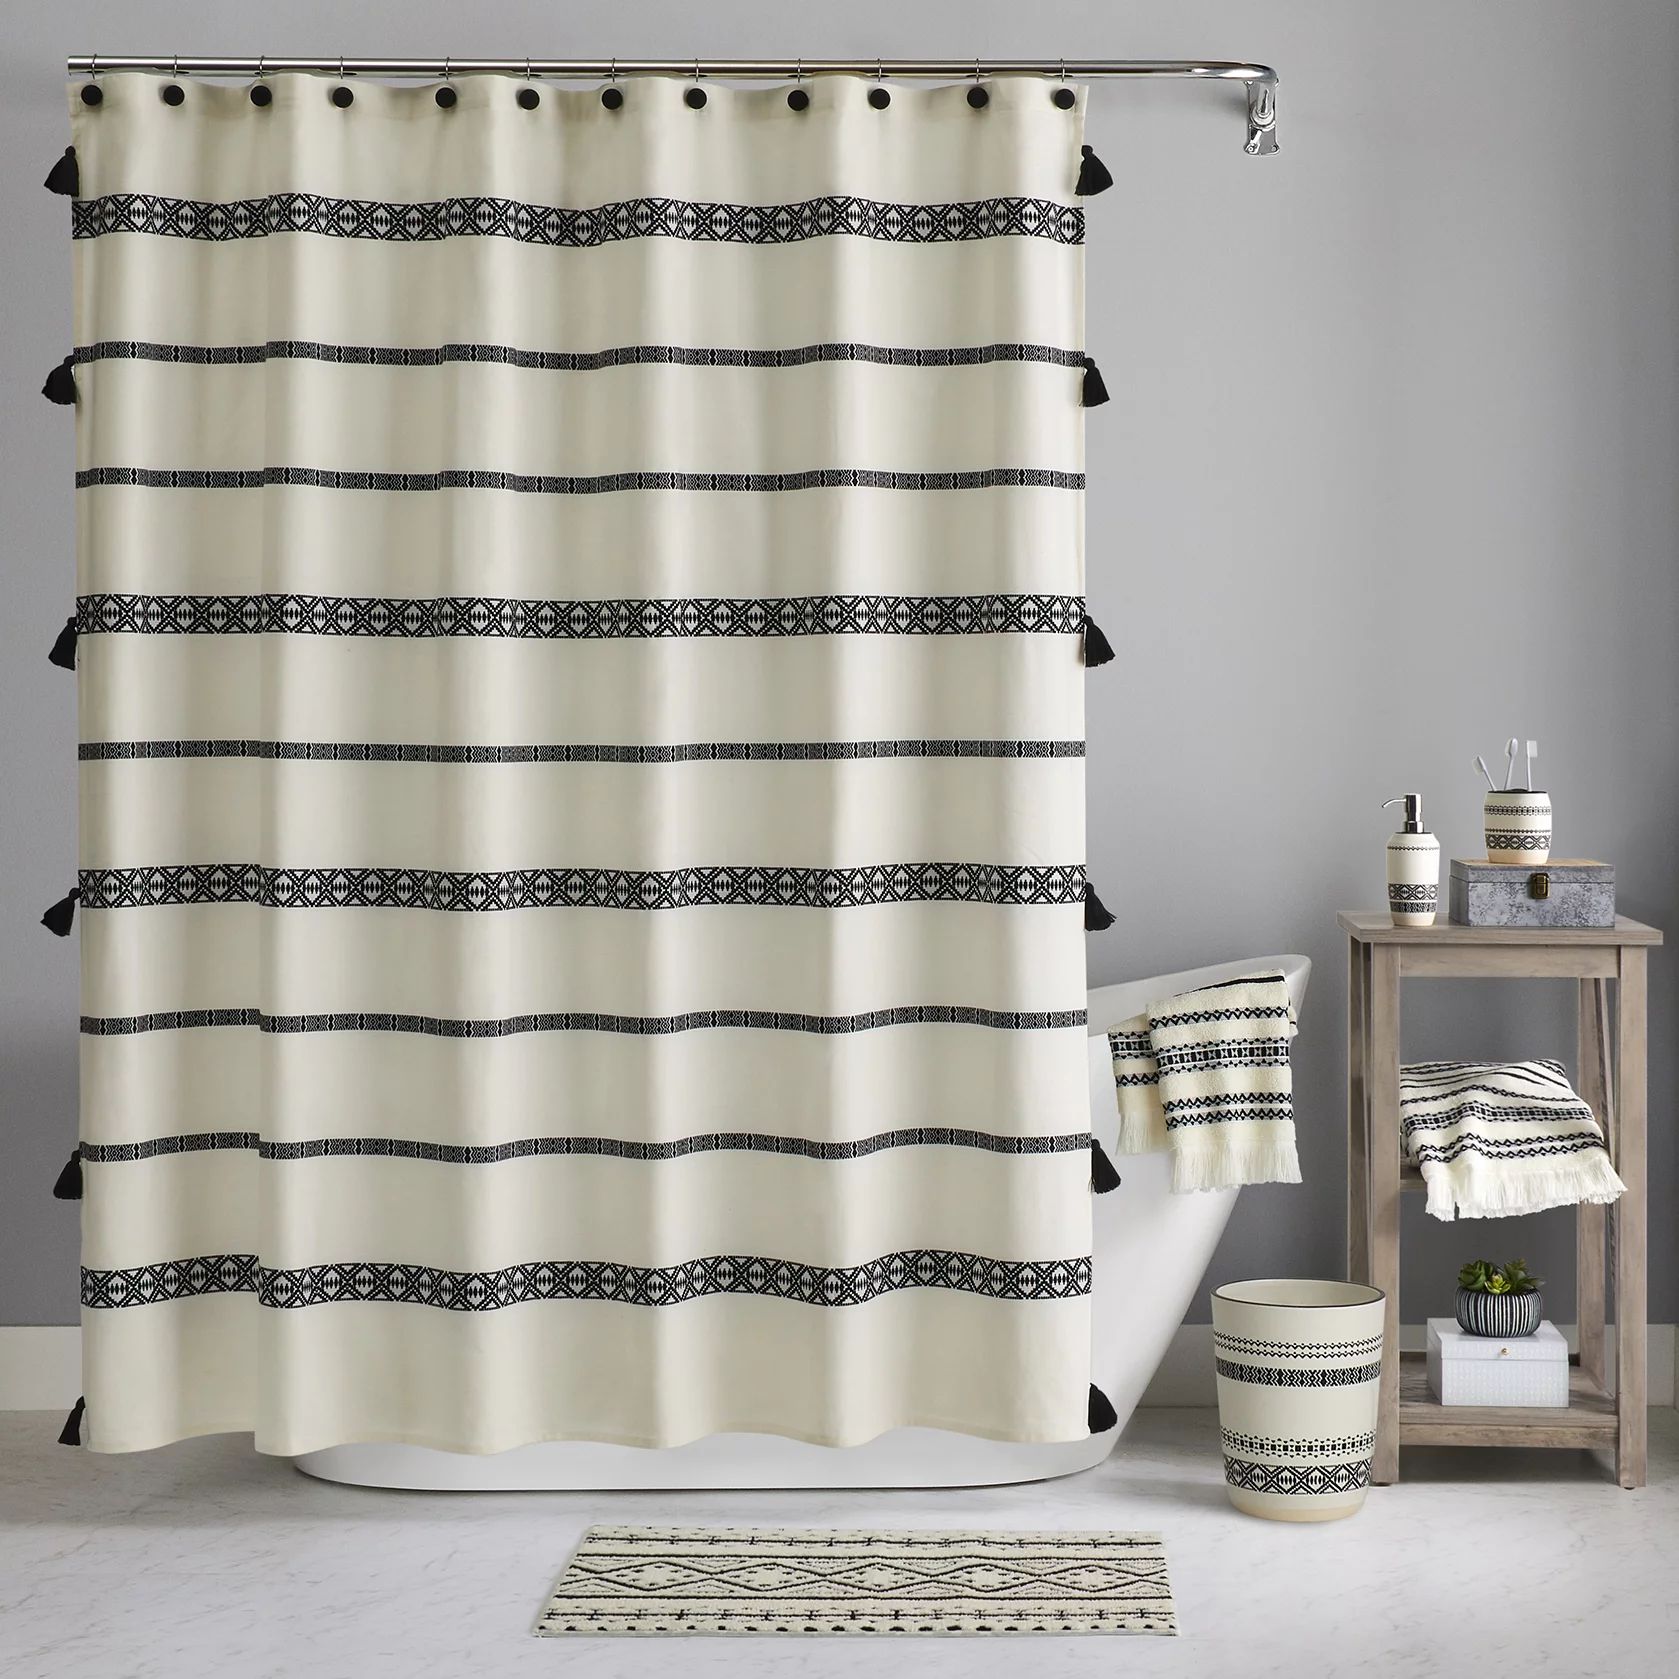 Better Homes & Gardens Boho Chic Cotton Shower Curtain, Beige, Black, 72"x72" | Walmart (US)